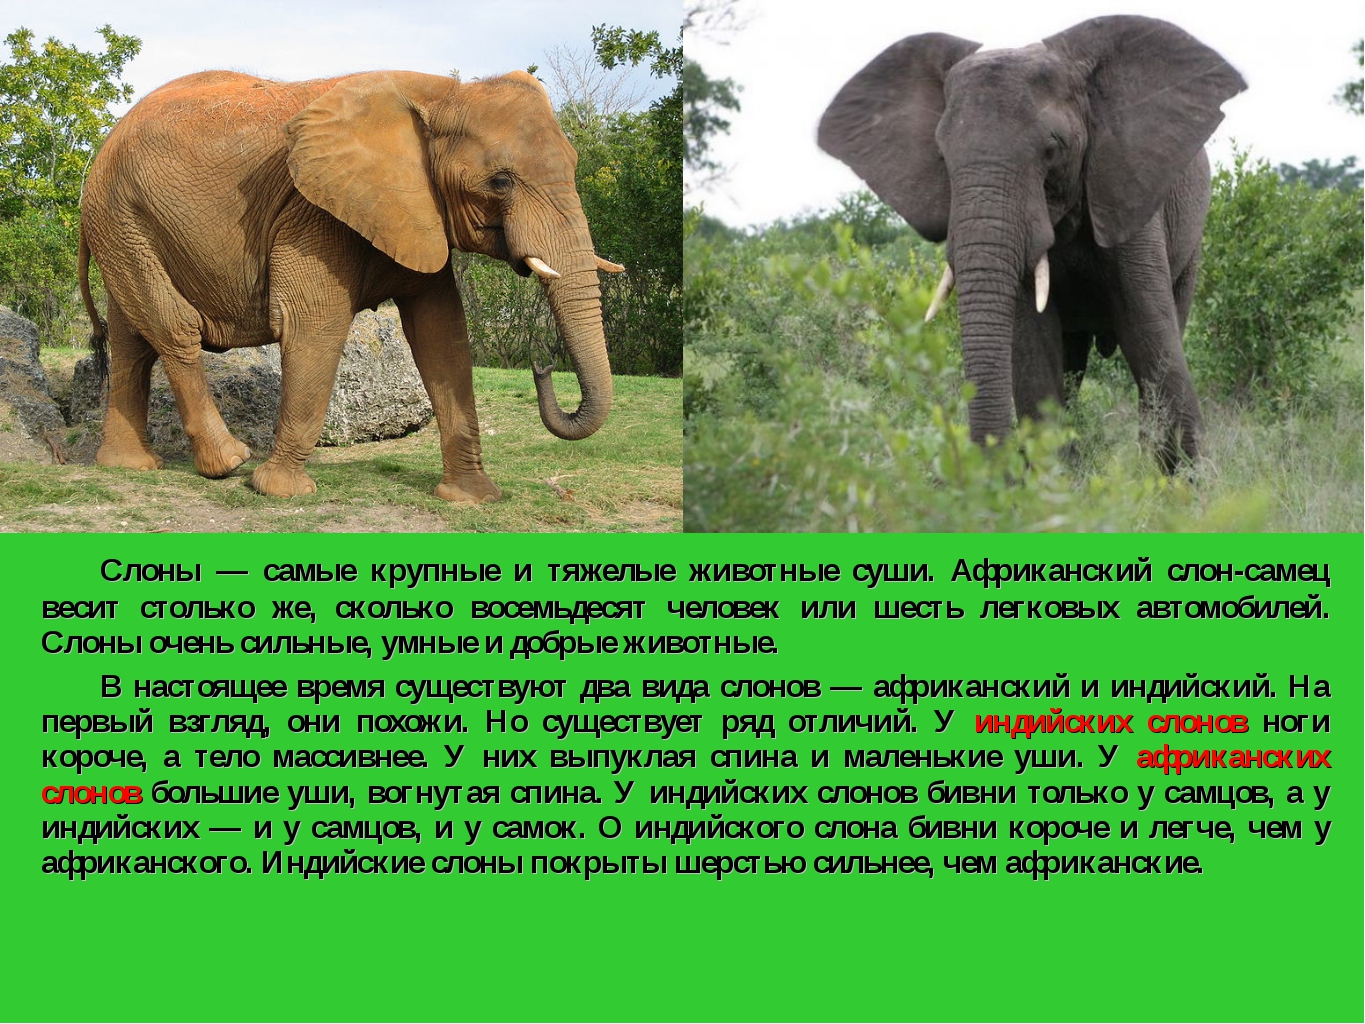 Описание слона